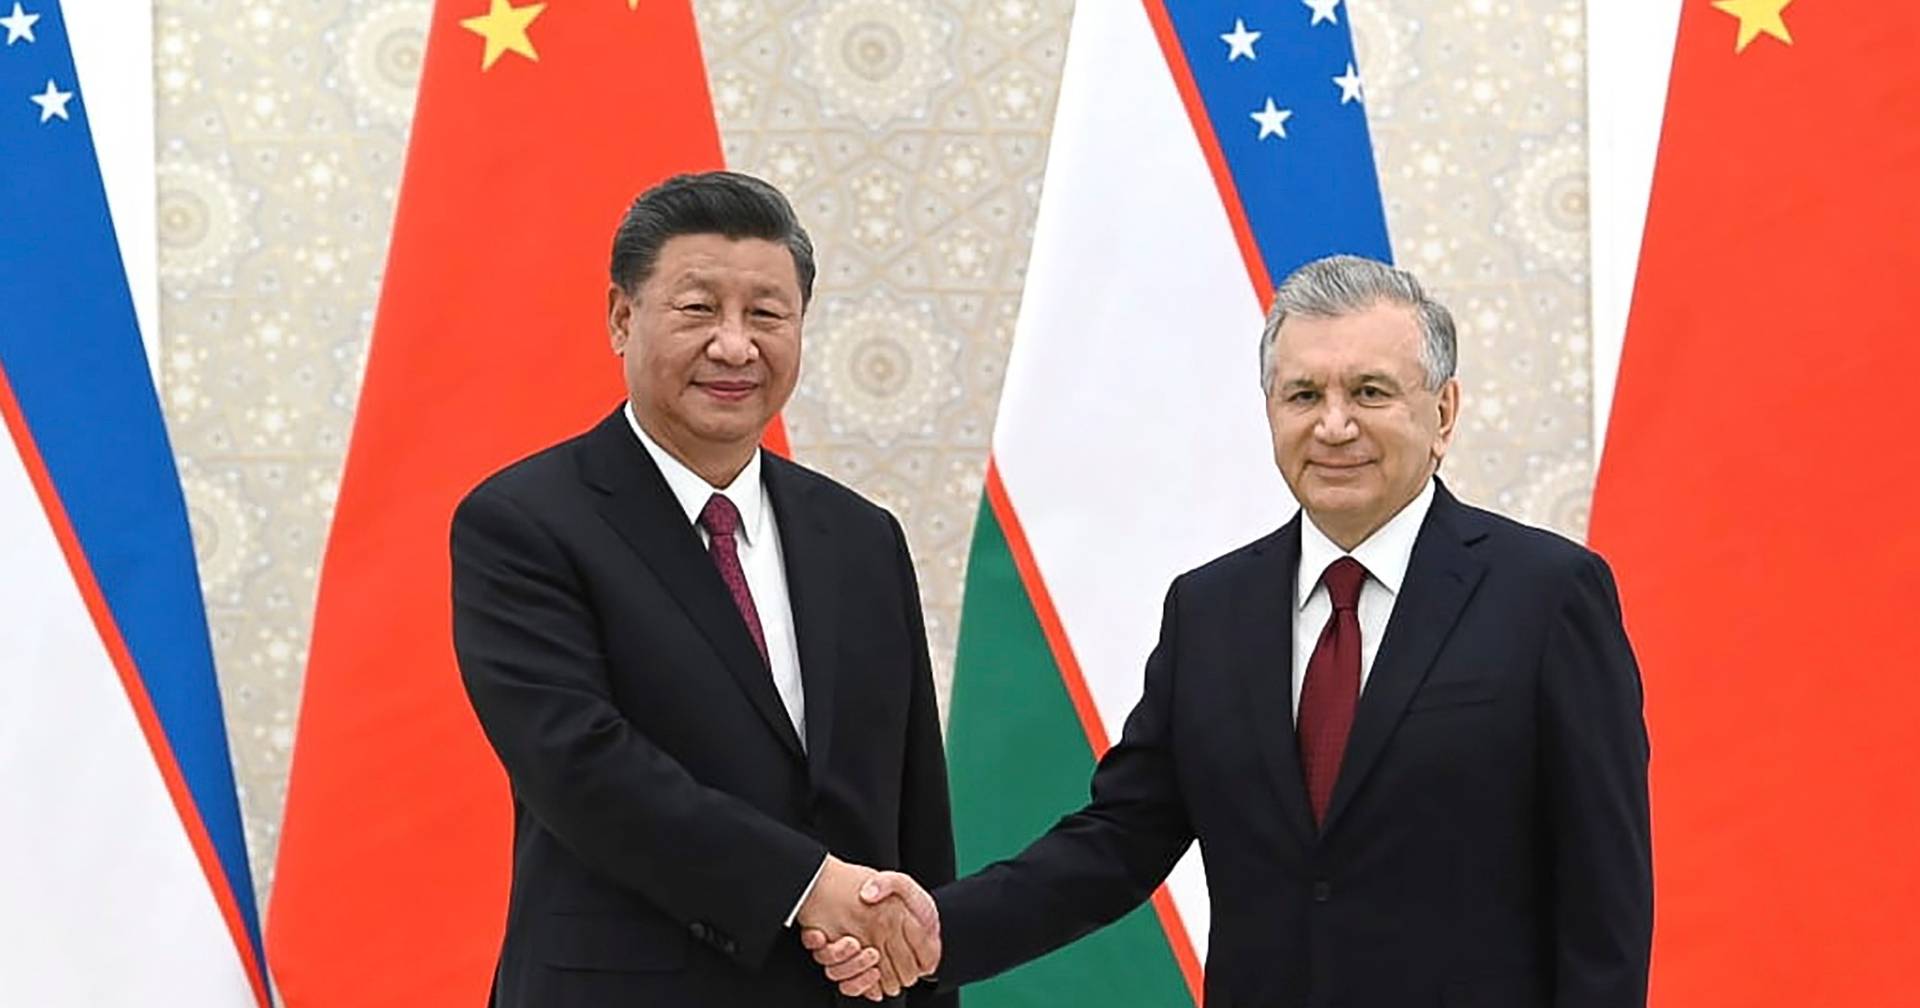 中国、ロシア、インド、中央アジア諸国が本日、ウズベキスタンで安全保障サミットを開催